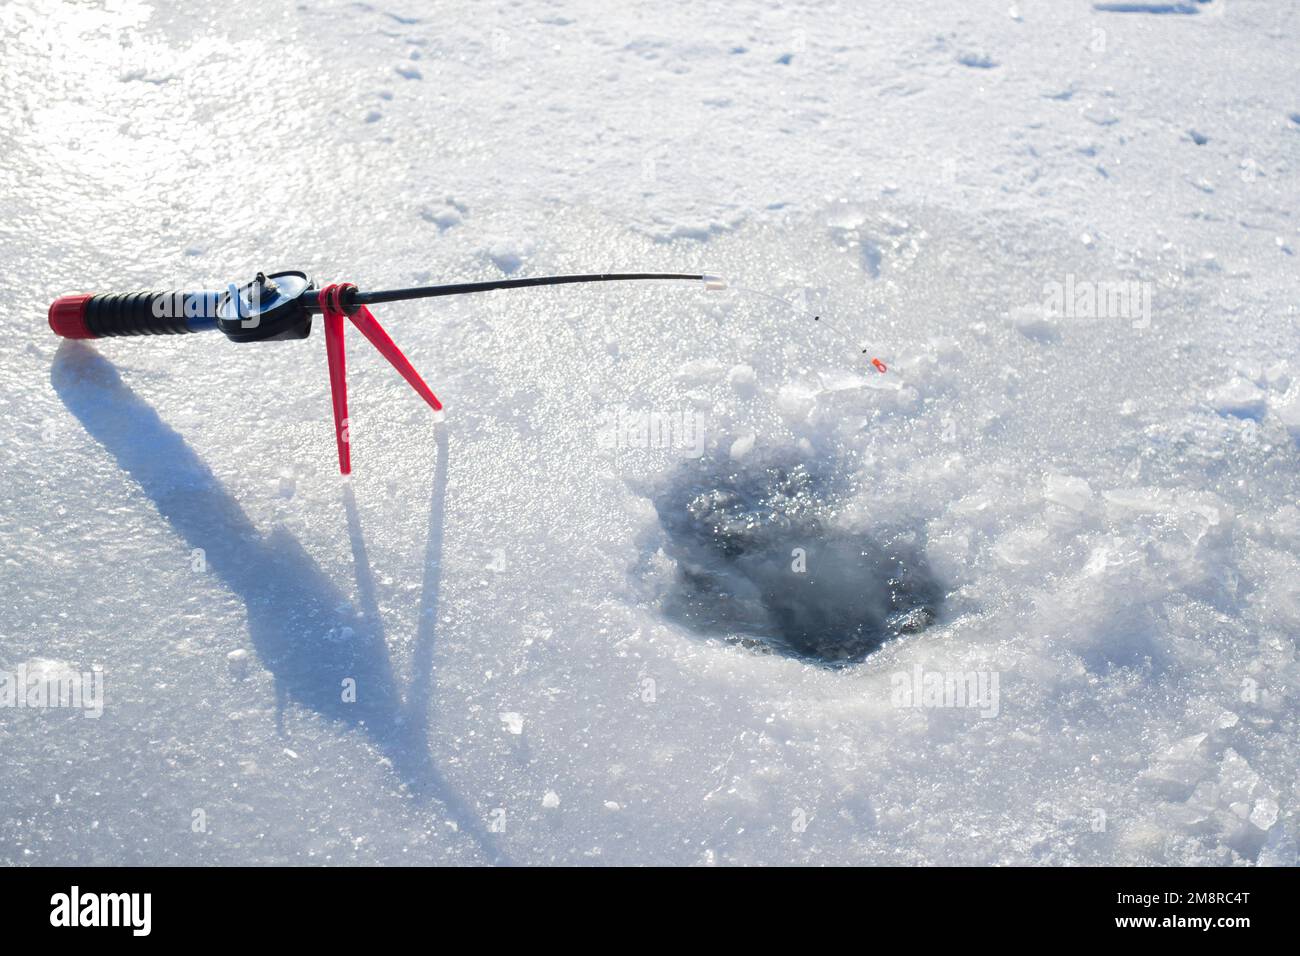 Pêche sous la glace en hiver. Pêche sous la glace en hiver. Une petite canne à pêche se trouve près d'un trou dans la glace d'une rivière par beau temps. En hiver Banque D'Images